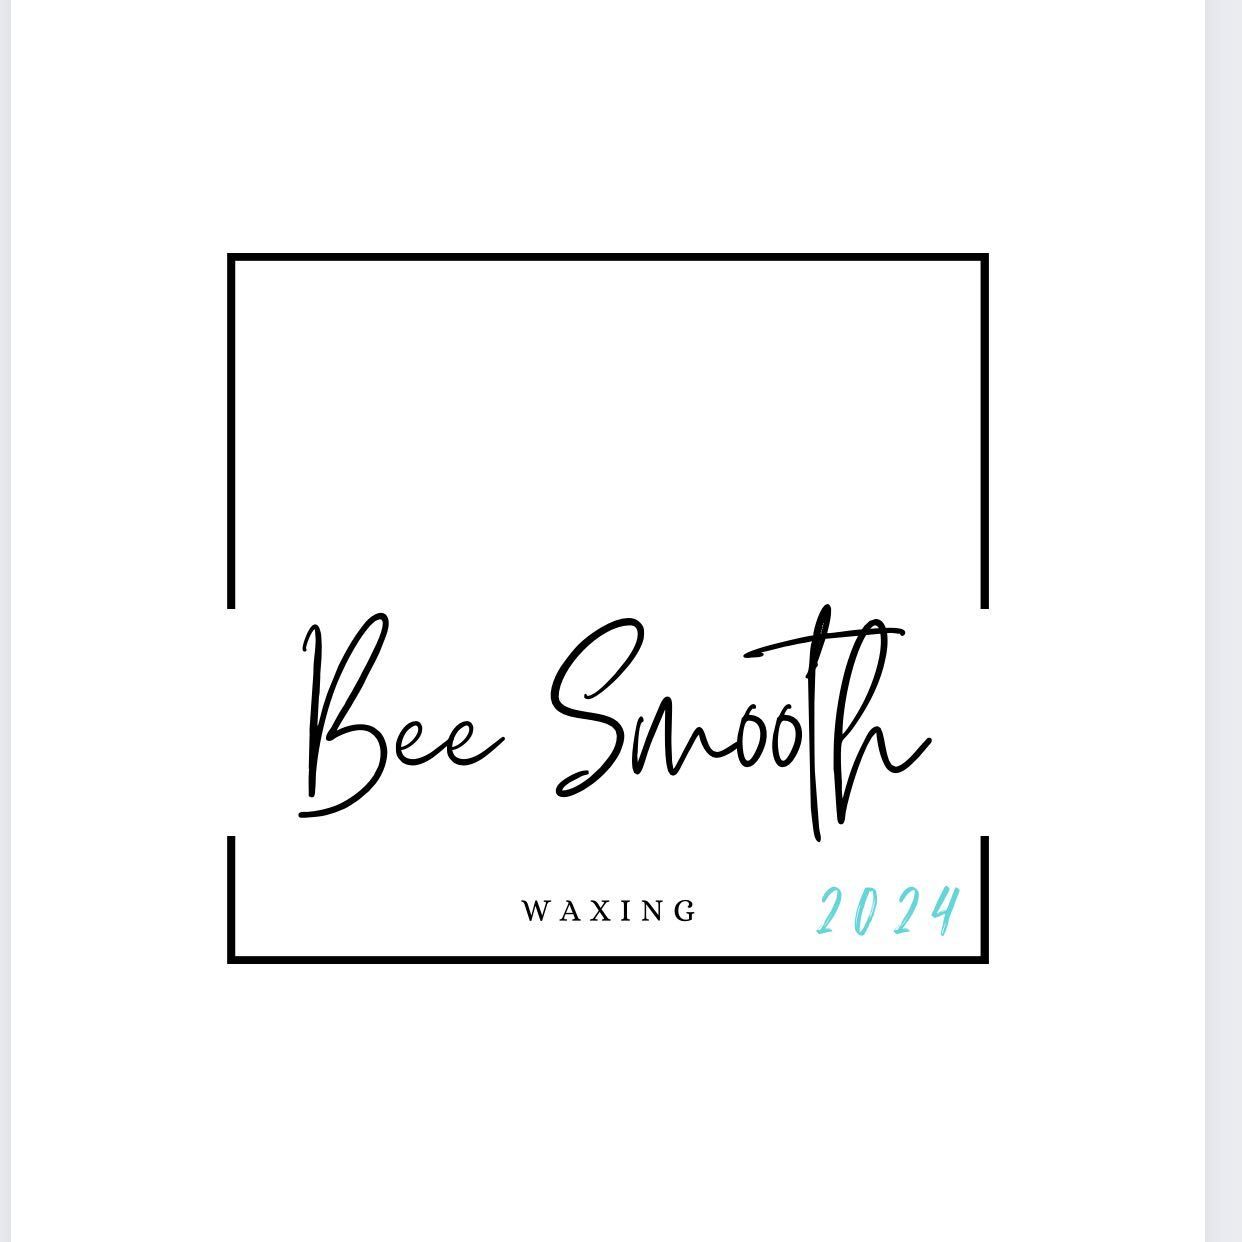 Bee smooth wax, Modesto, 95354